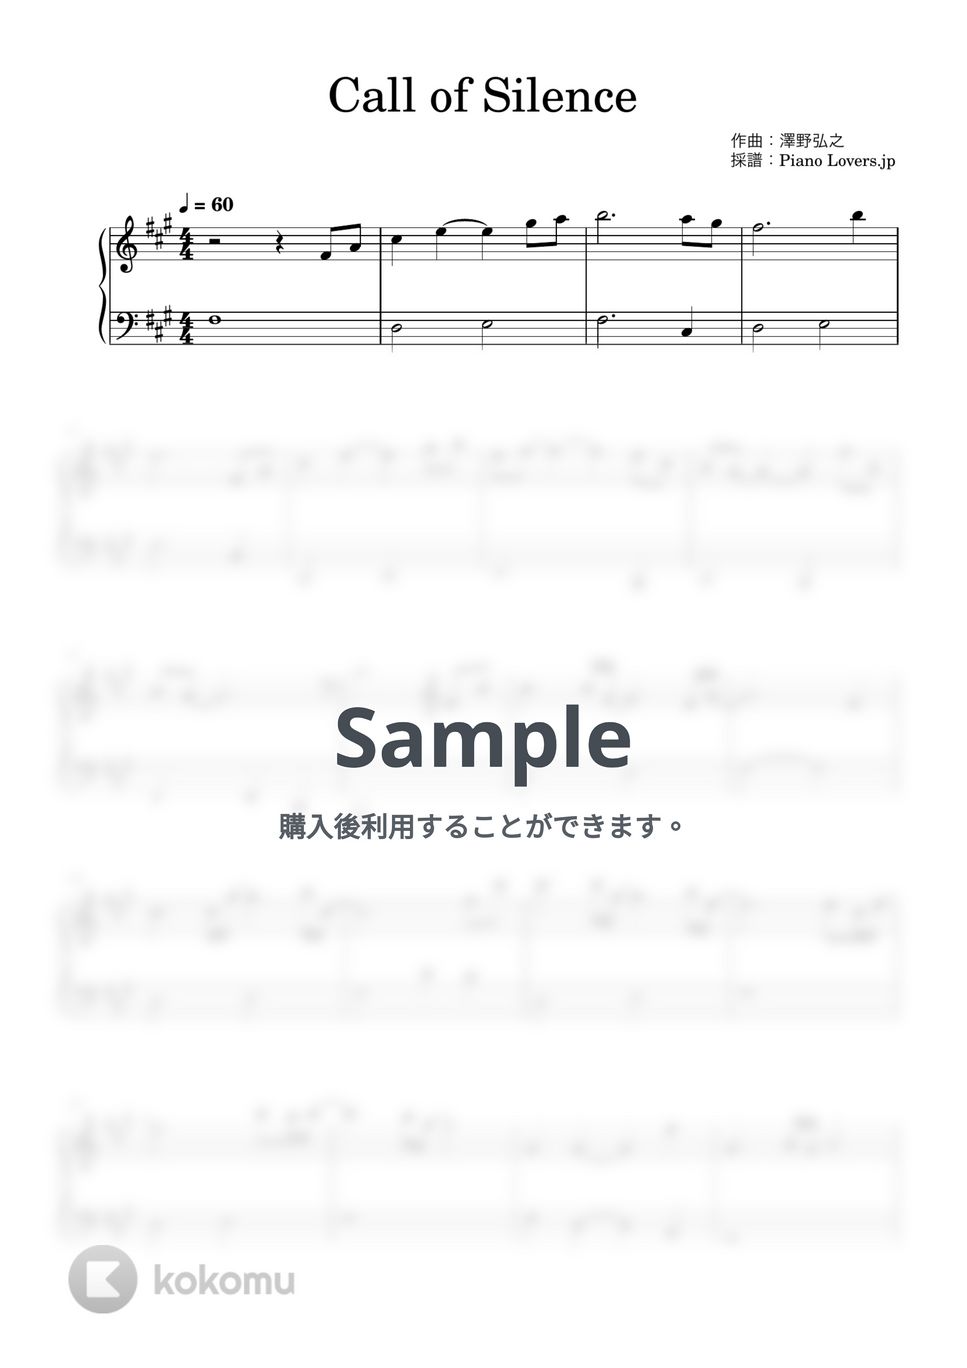 澤野弘之 - Call of Silence (進撃の巨人) by Piano Lovers. jp